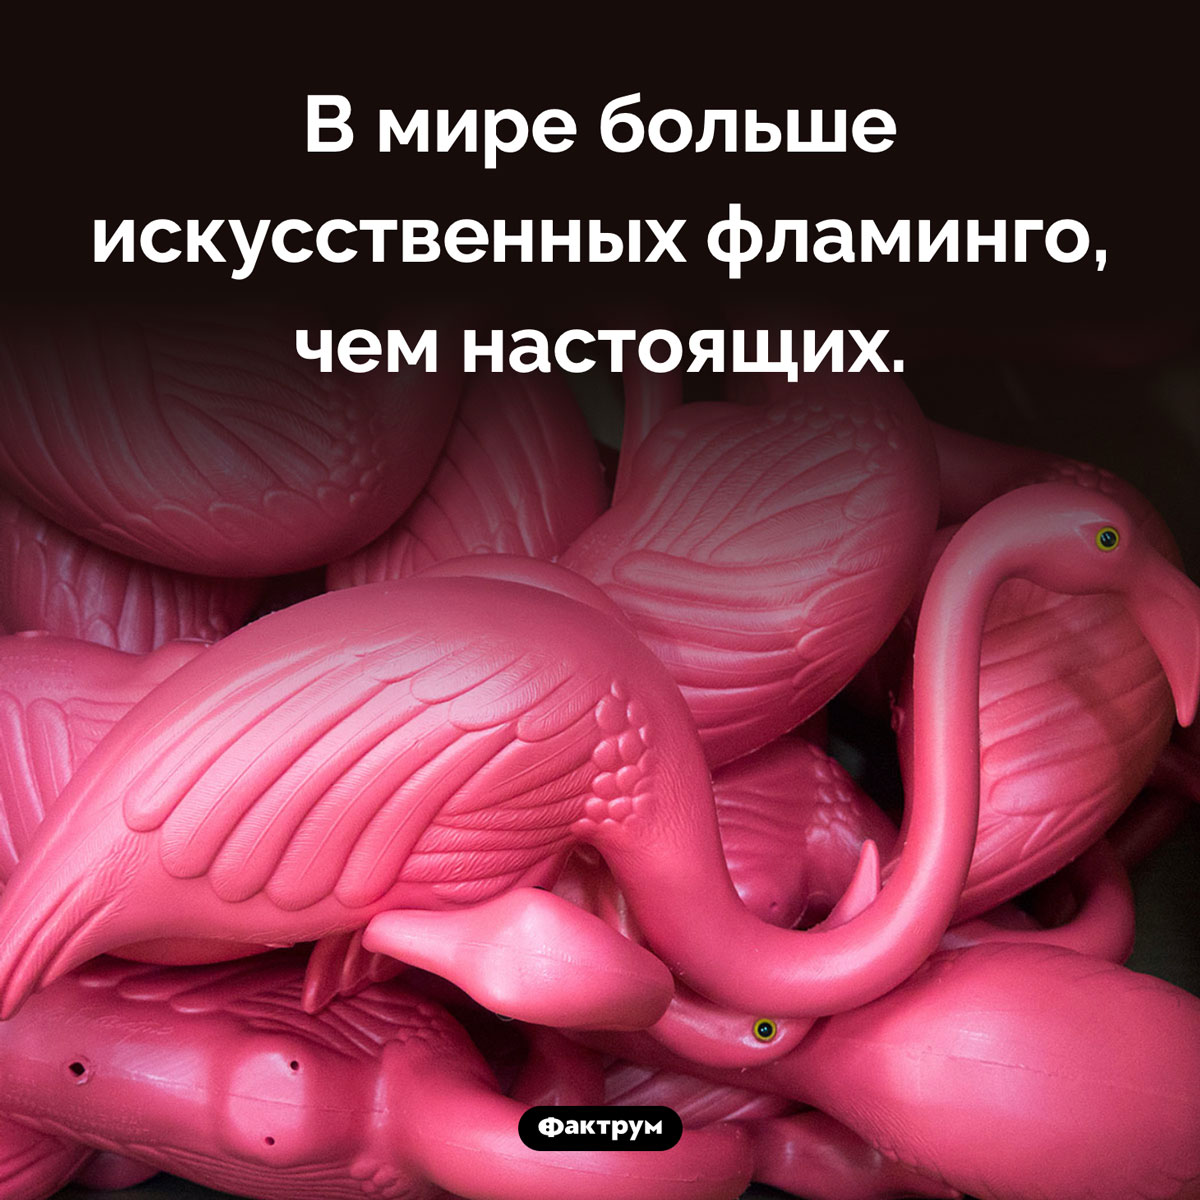 Пластиковые фламинго не вымирают, в отличие от настоящих. В мире больше искусственных фламинго, чем настоящих.